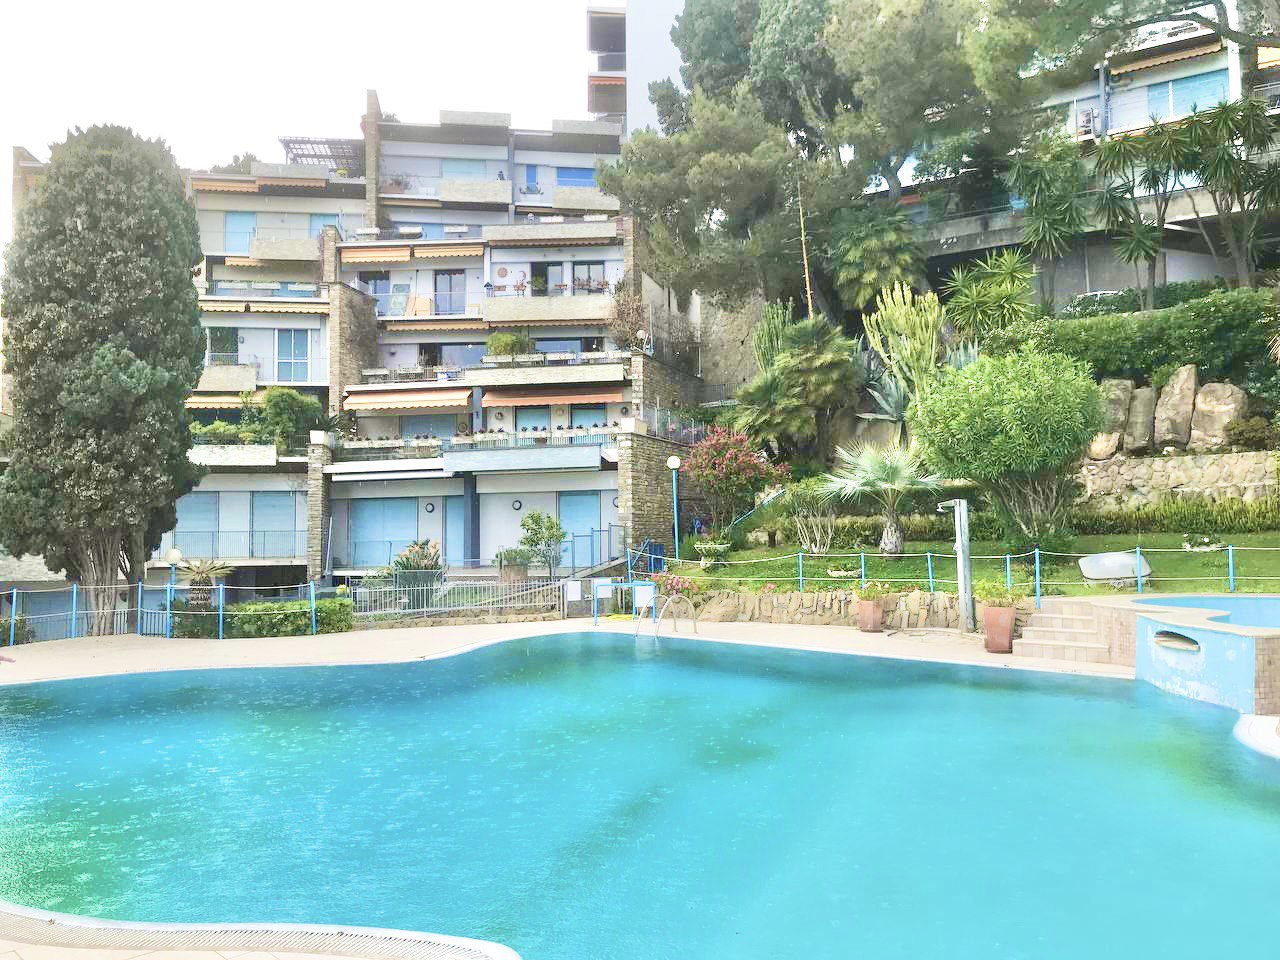 Sanremo. Appartamento con giardino e piscina condominiale